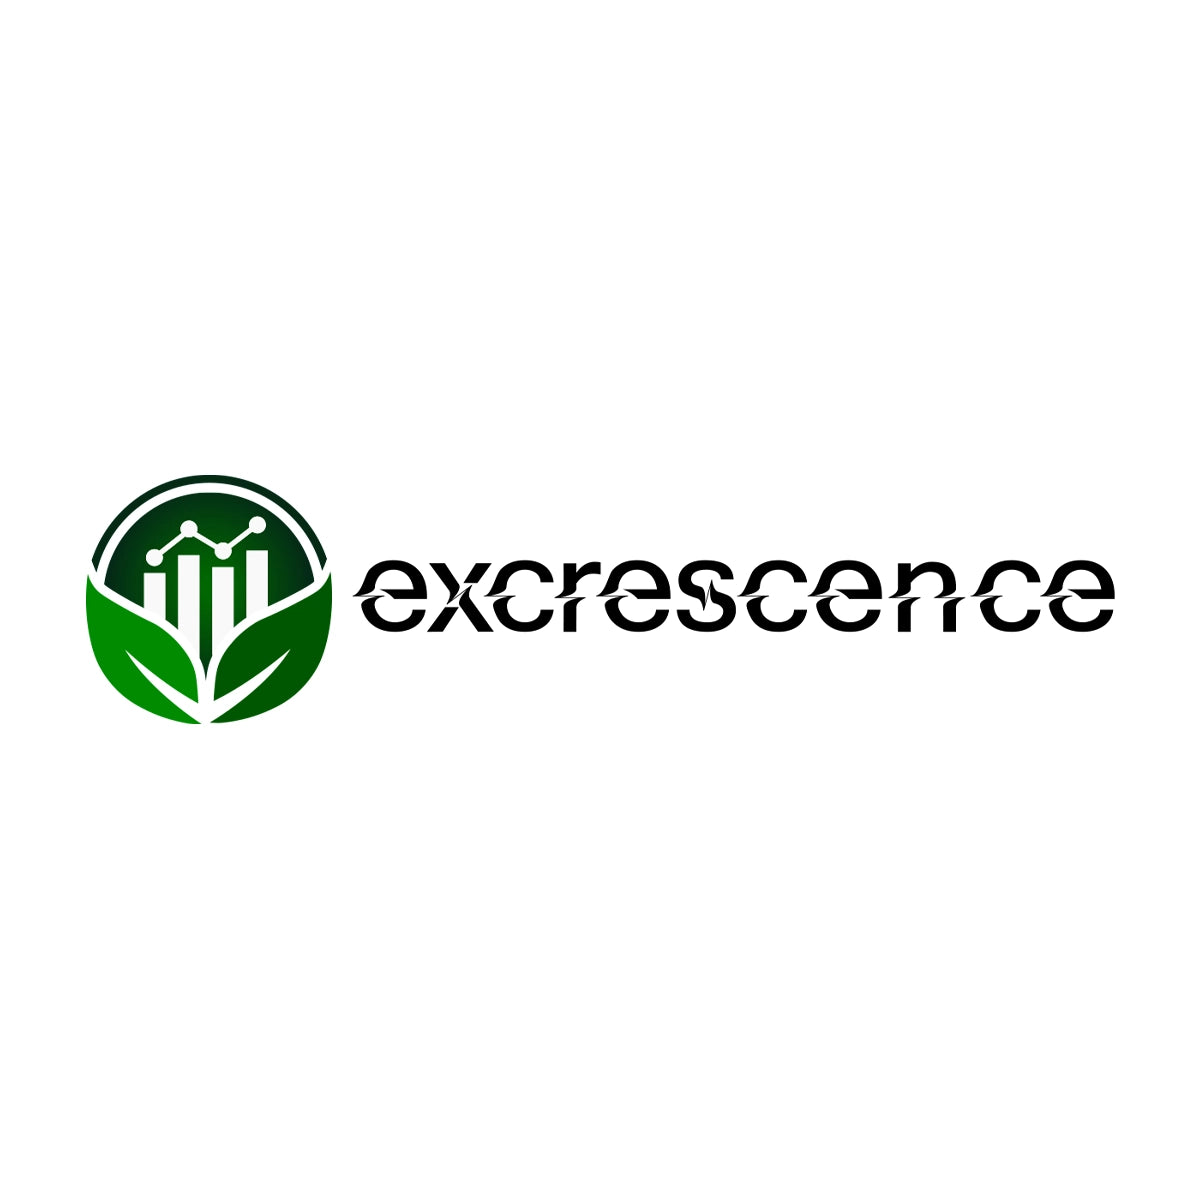 excrescence.com